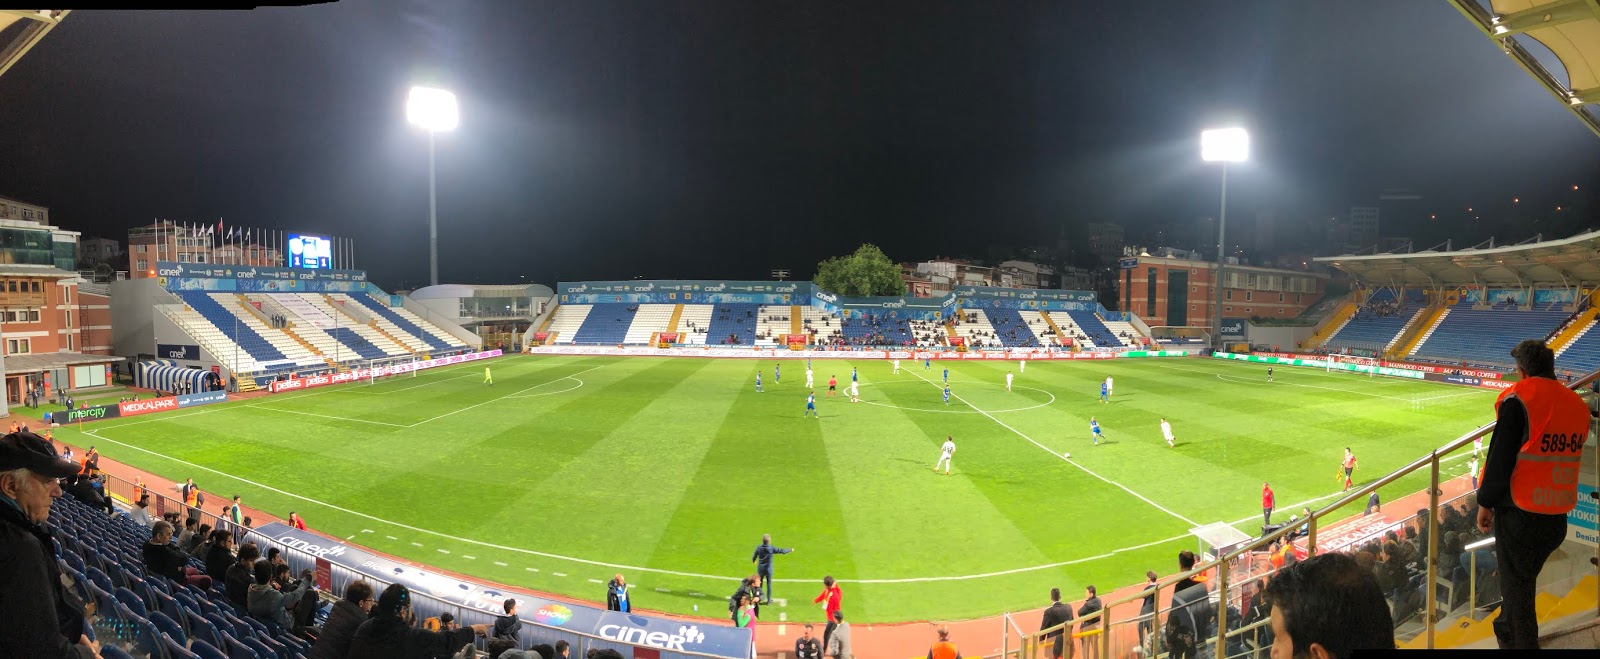 Kasımpaşa V Konyaspor, Istanbul, Turkey - Soccer-specific Stadium , HD Wallpaper & Backgrounds